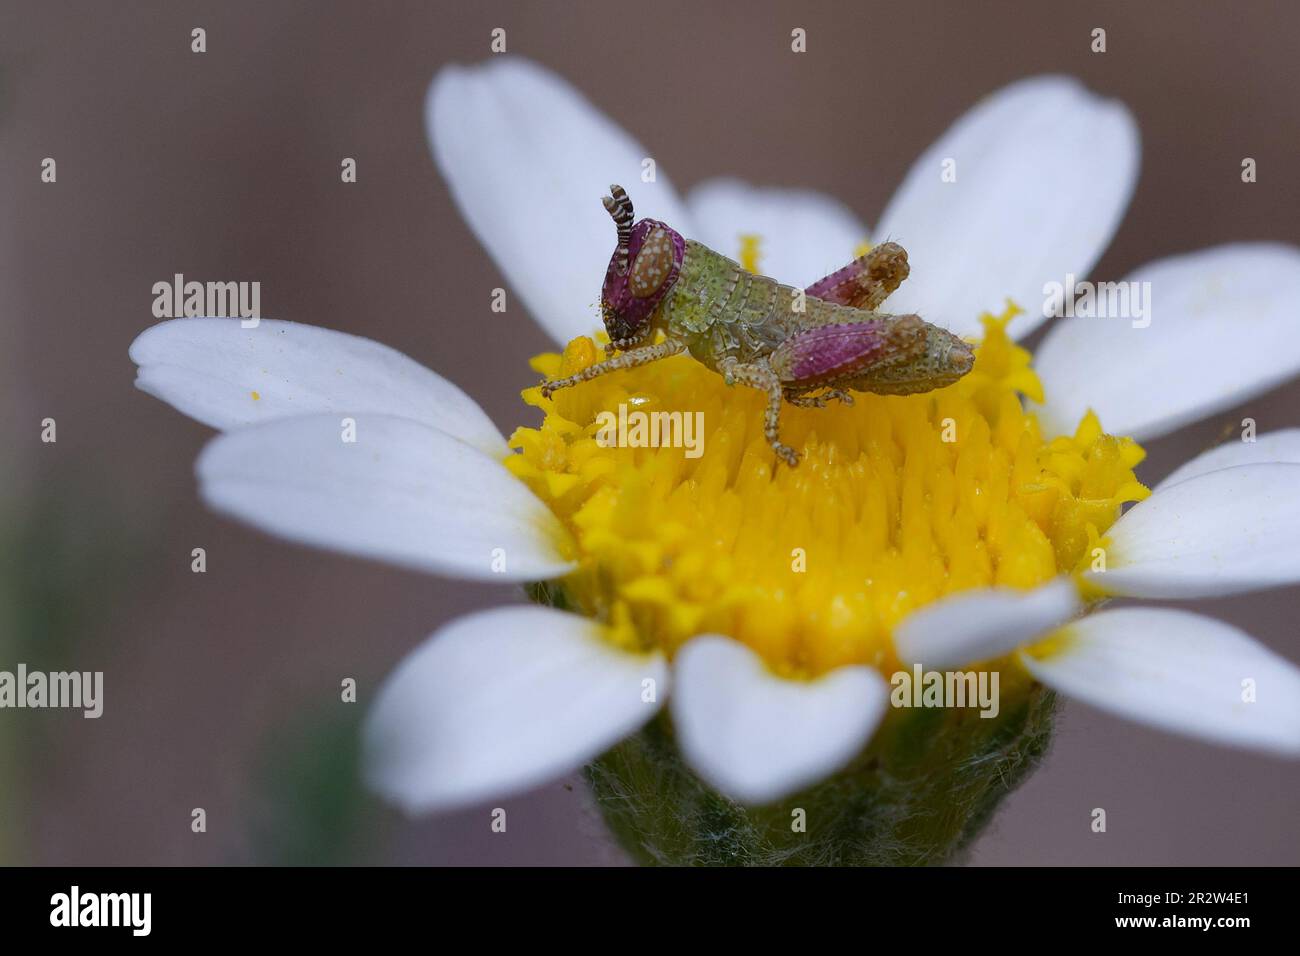 Juvenile Short-horned grasshopper (Pezotettix giornae) on a flower Stock Photo